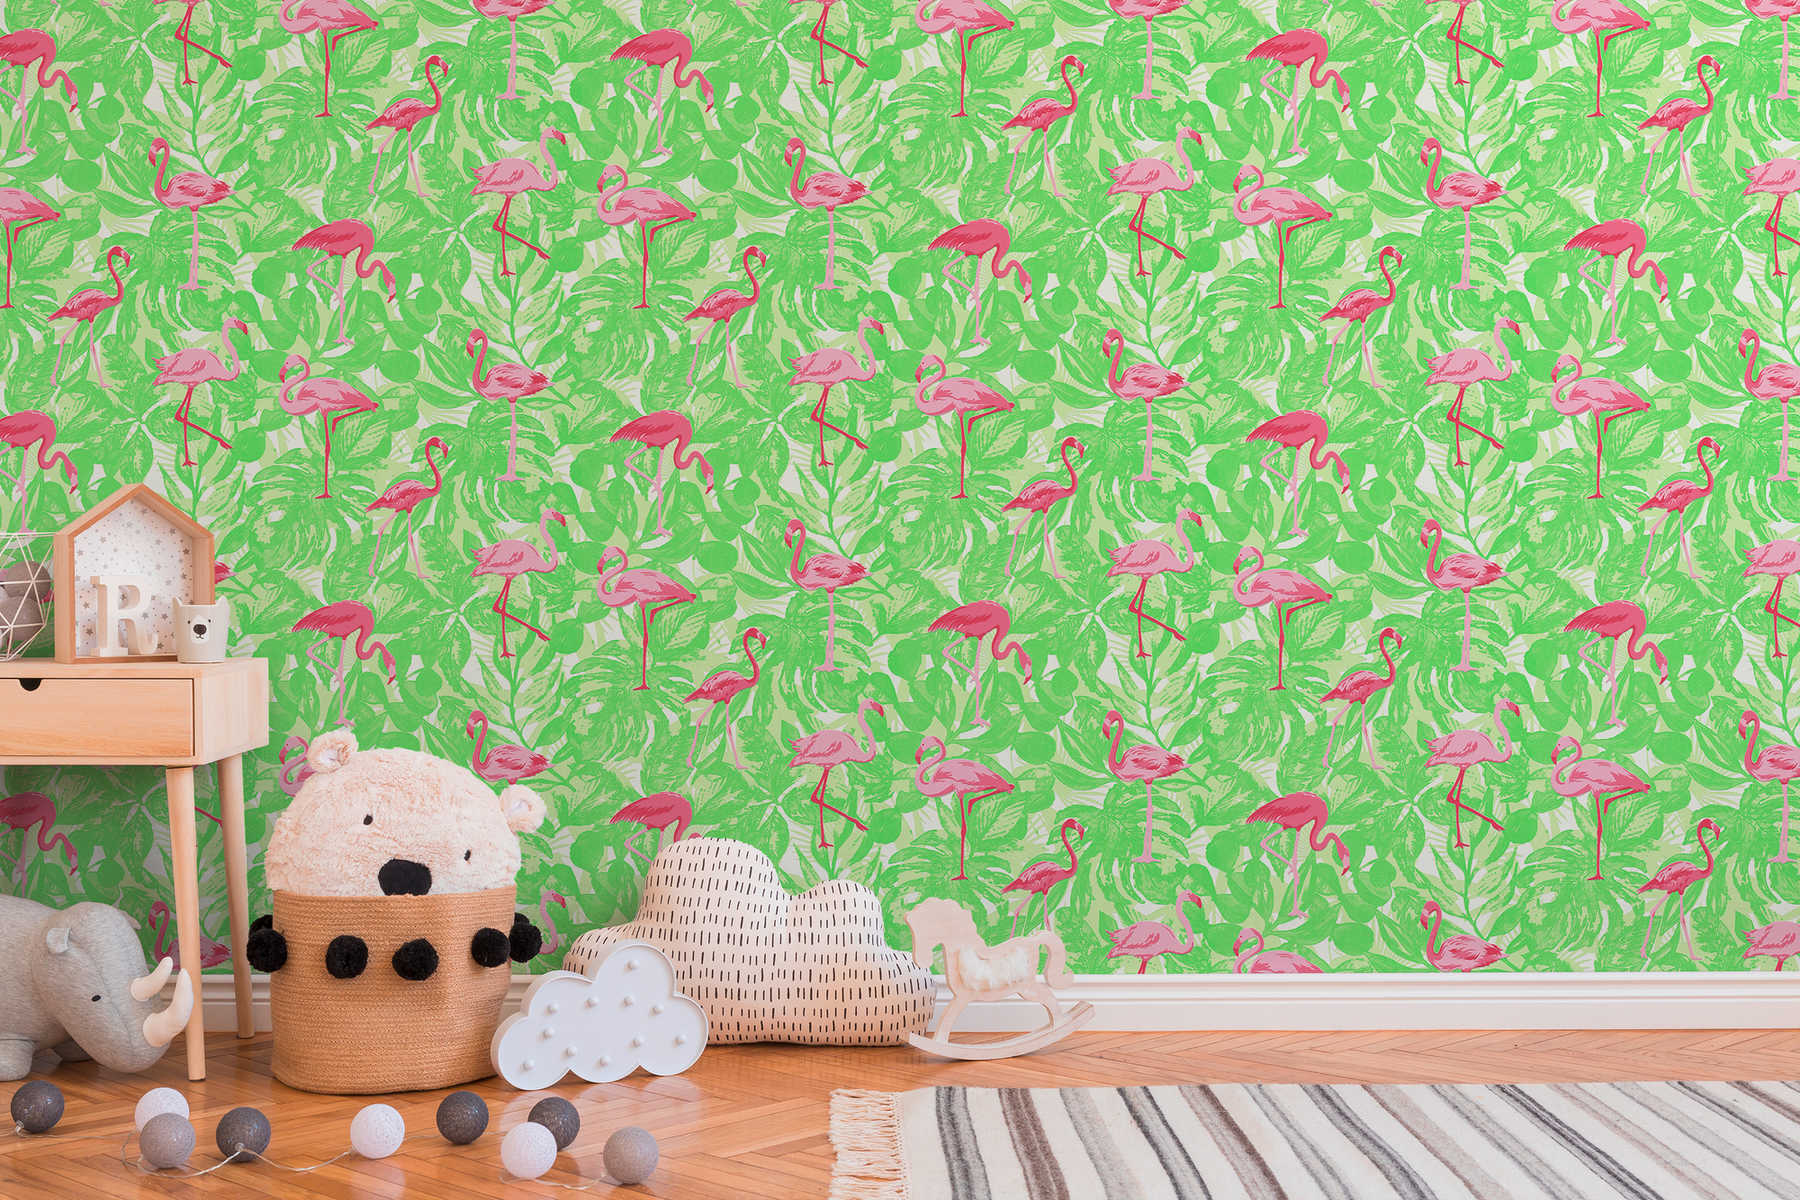             Tropische Tapete mit Flamingo & Blättern – Rosa, Grün
        